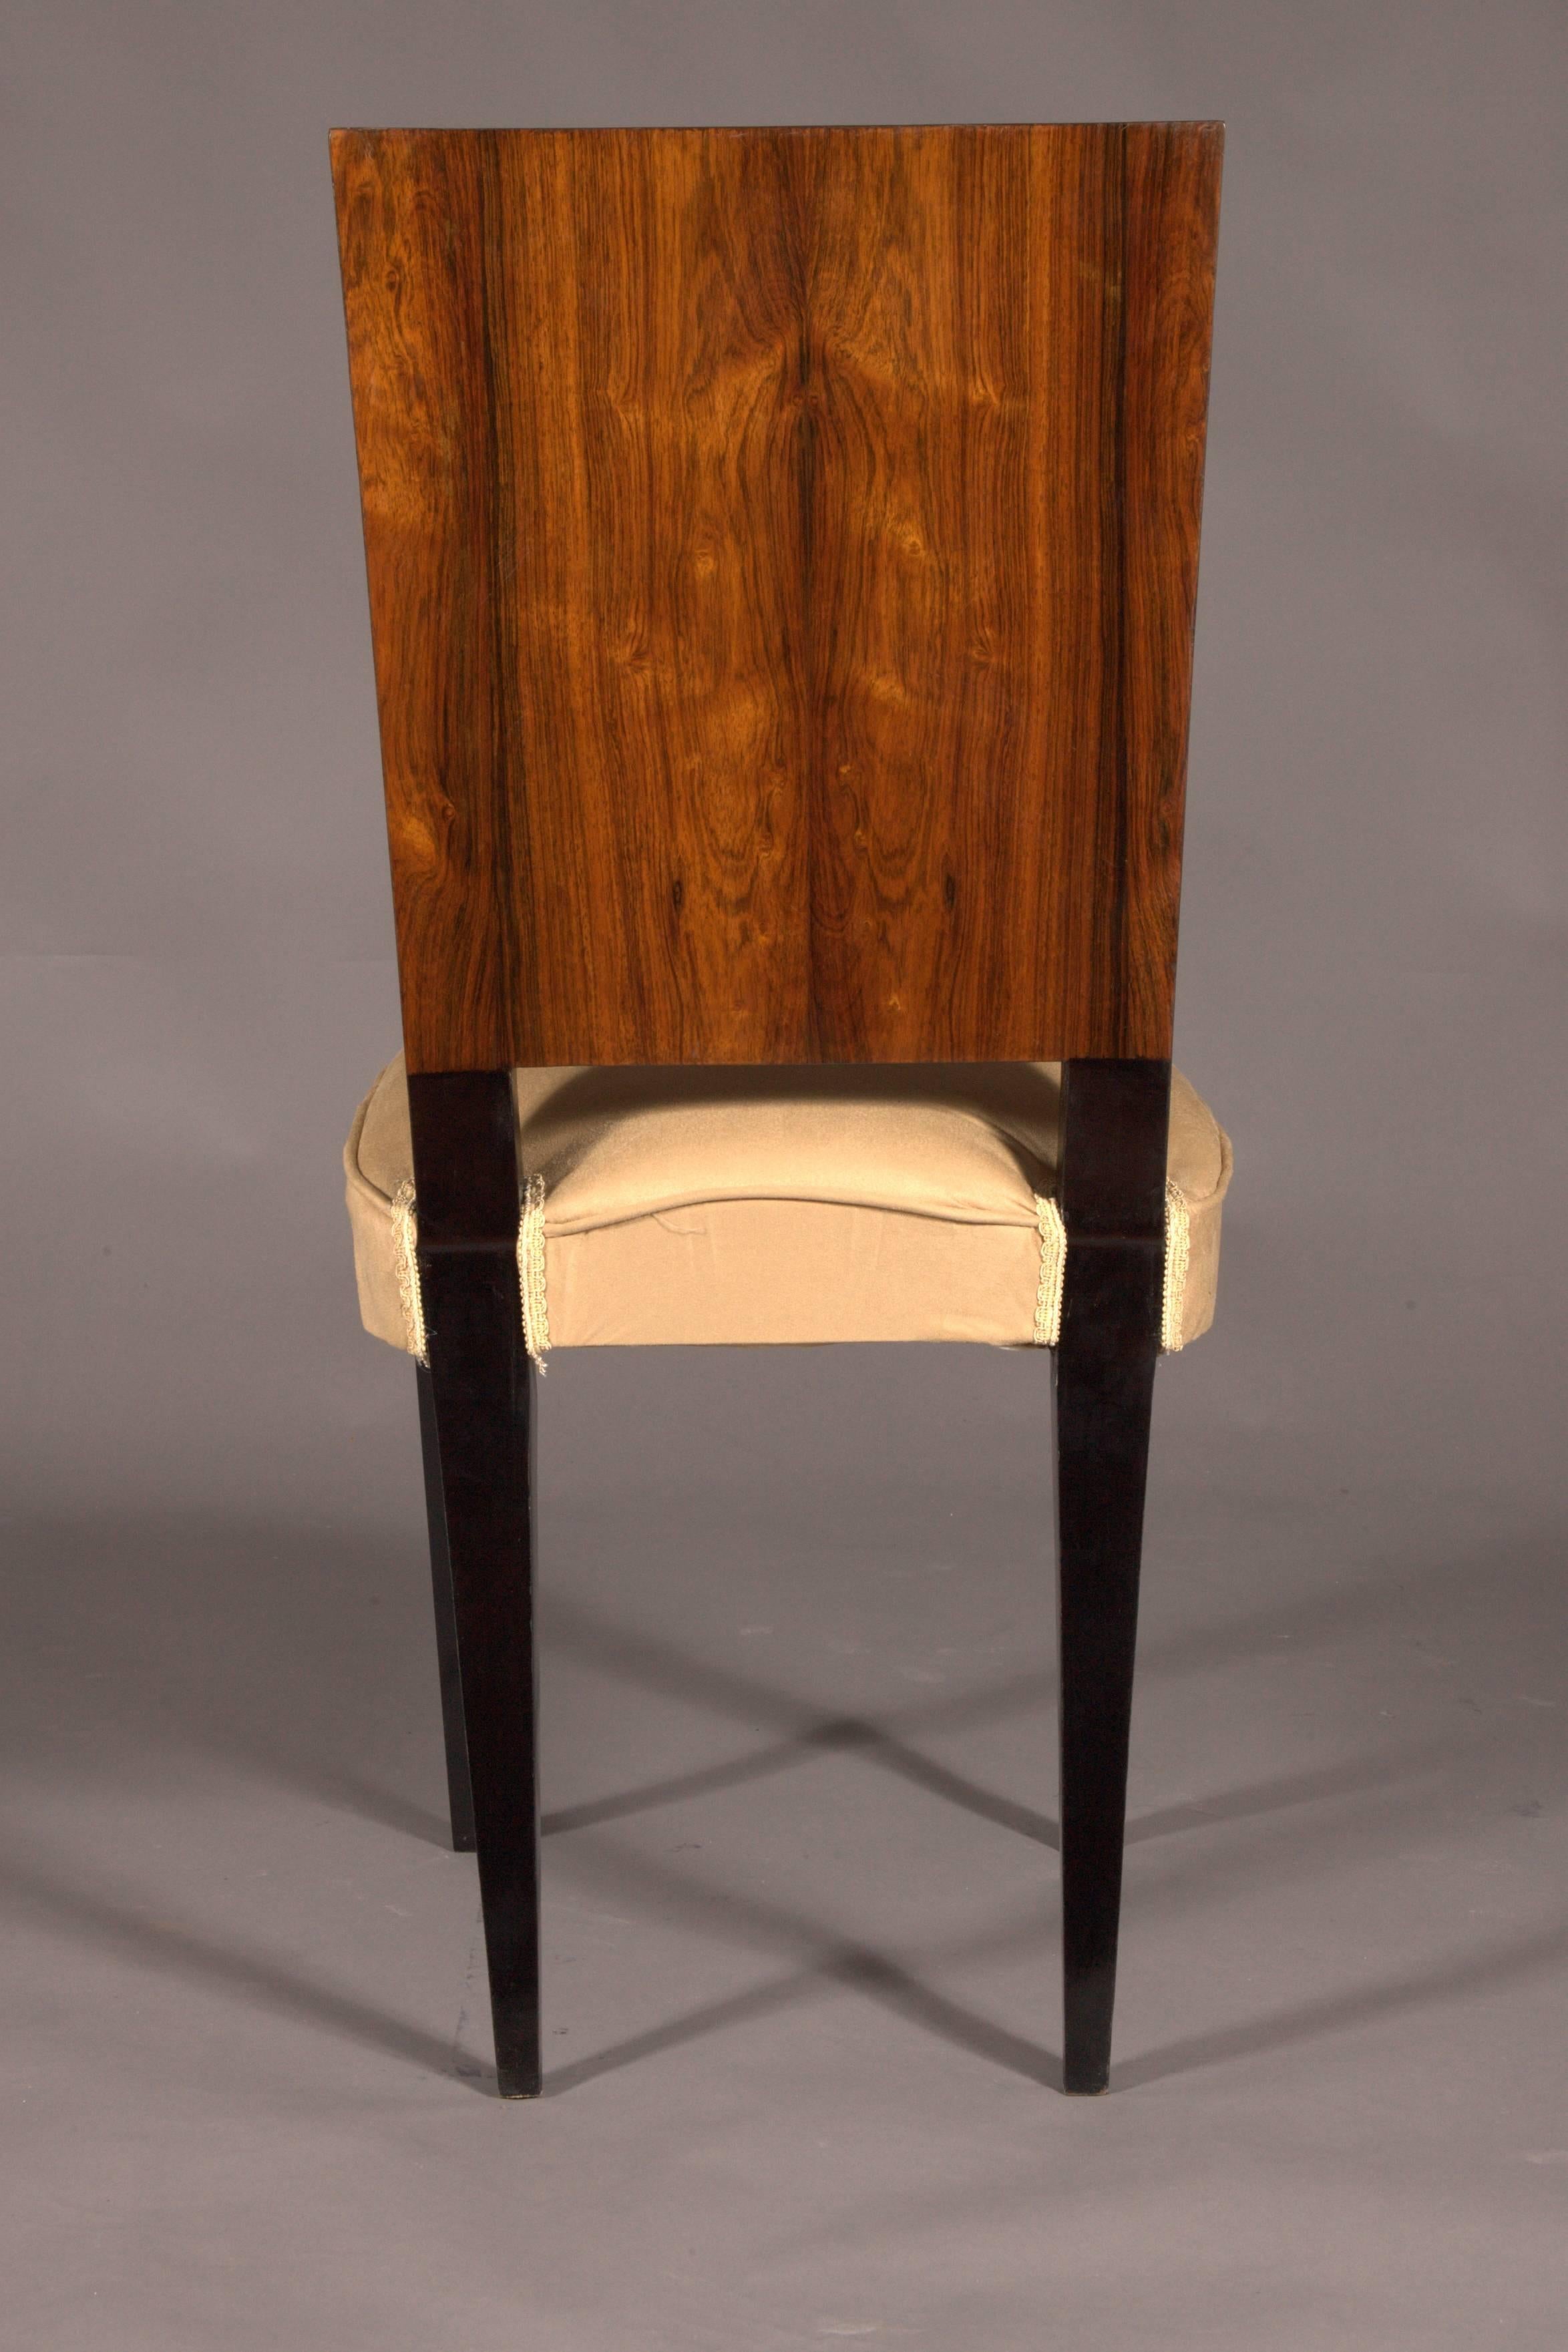 20th Century 1 Elegant Chair in Art Deco Style, Rosewood Veneer